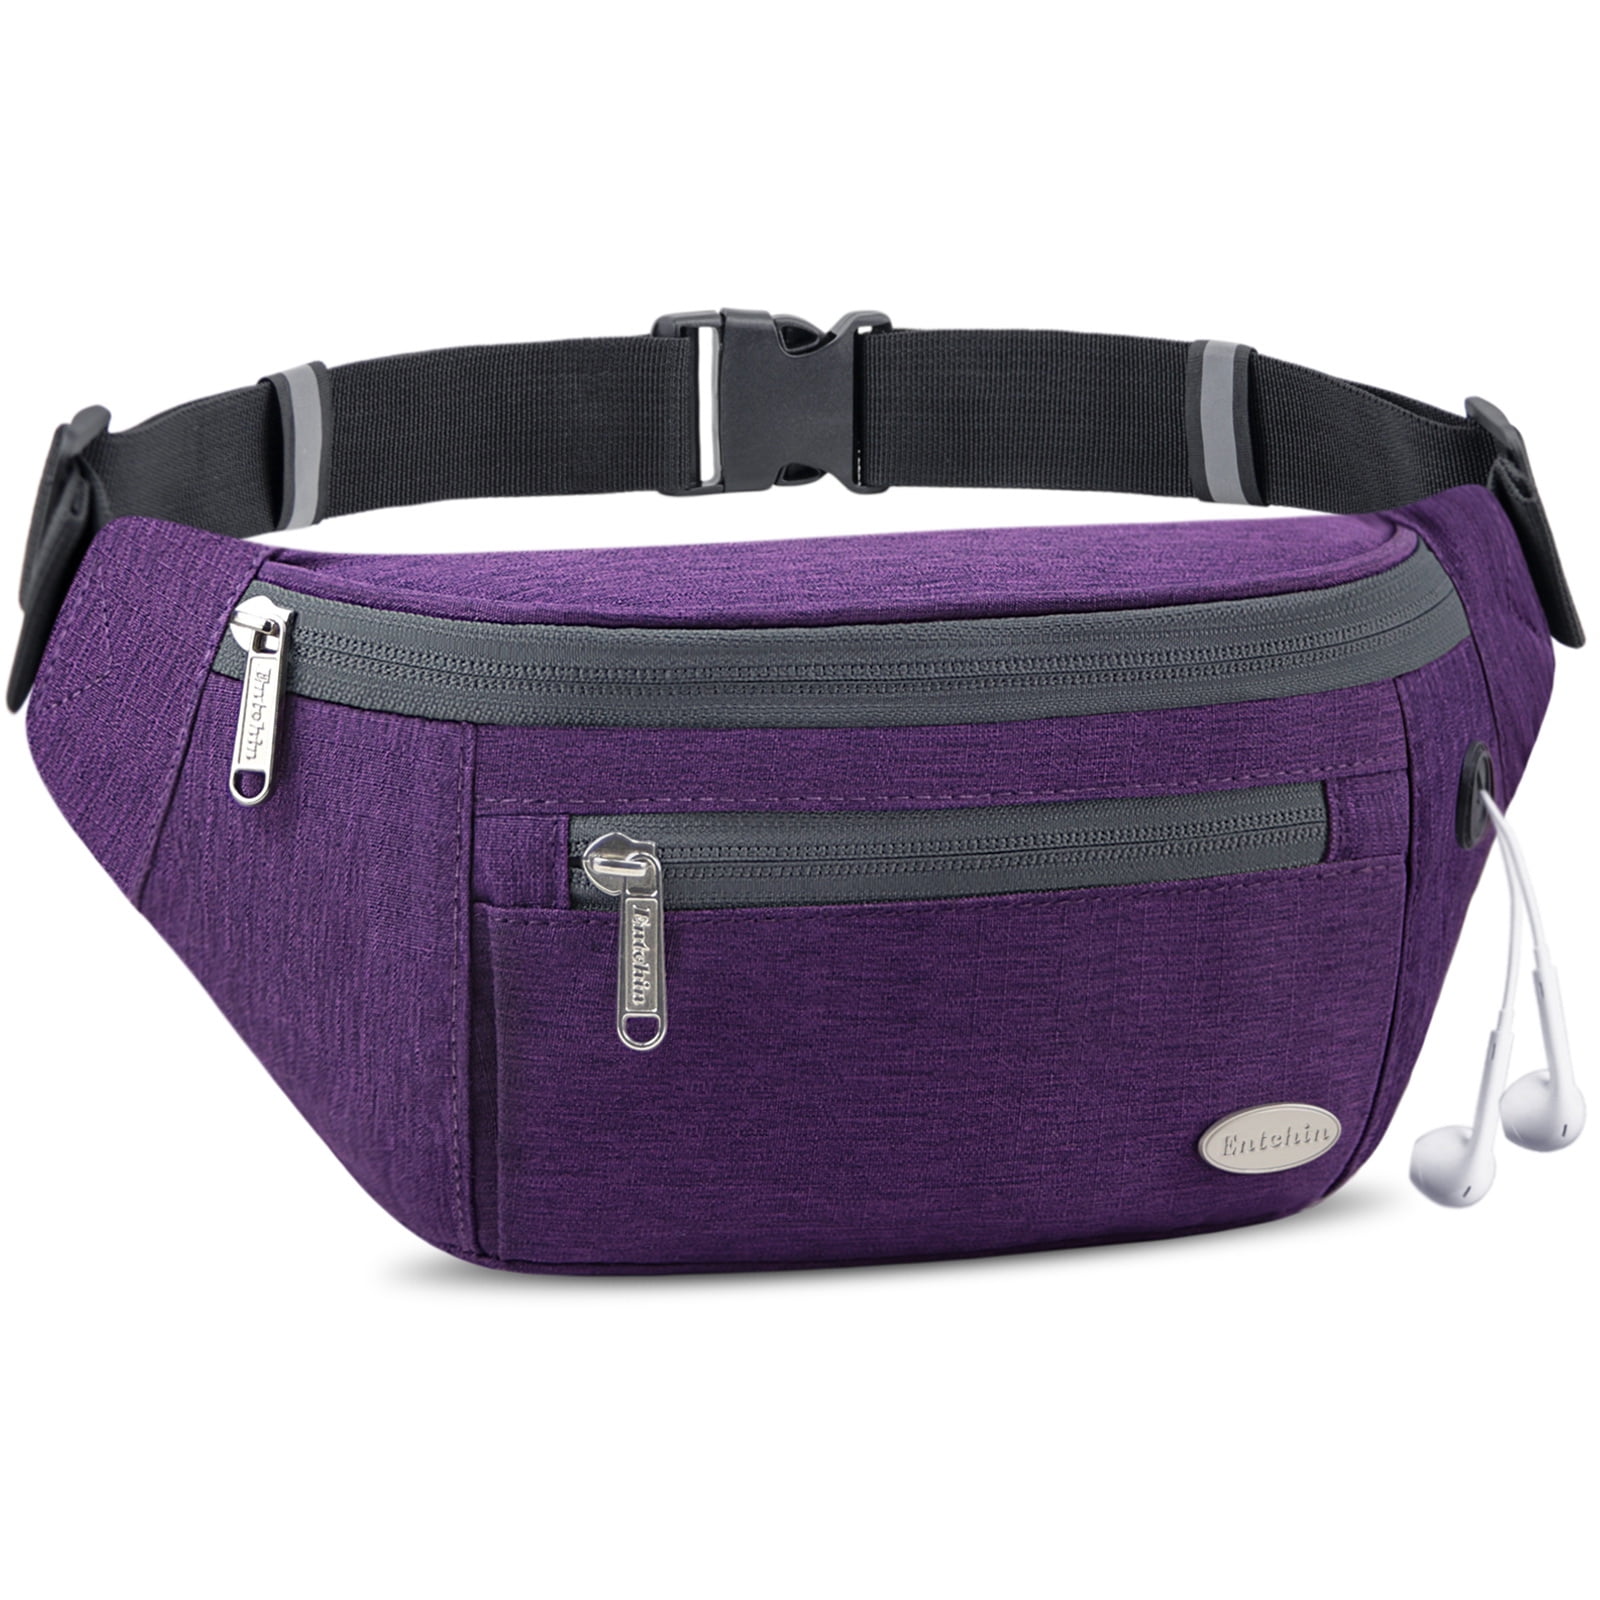 Entchin Small Fanny Pack Mini Bum 4 zipper pocket adjustable Belt Bag